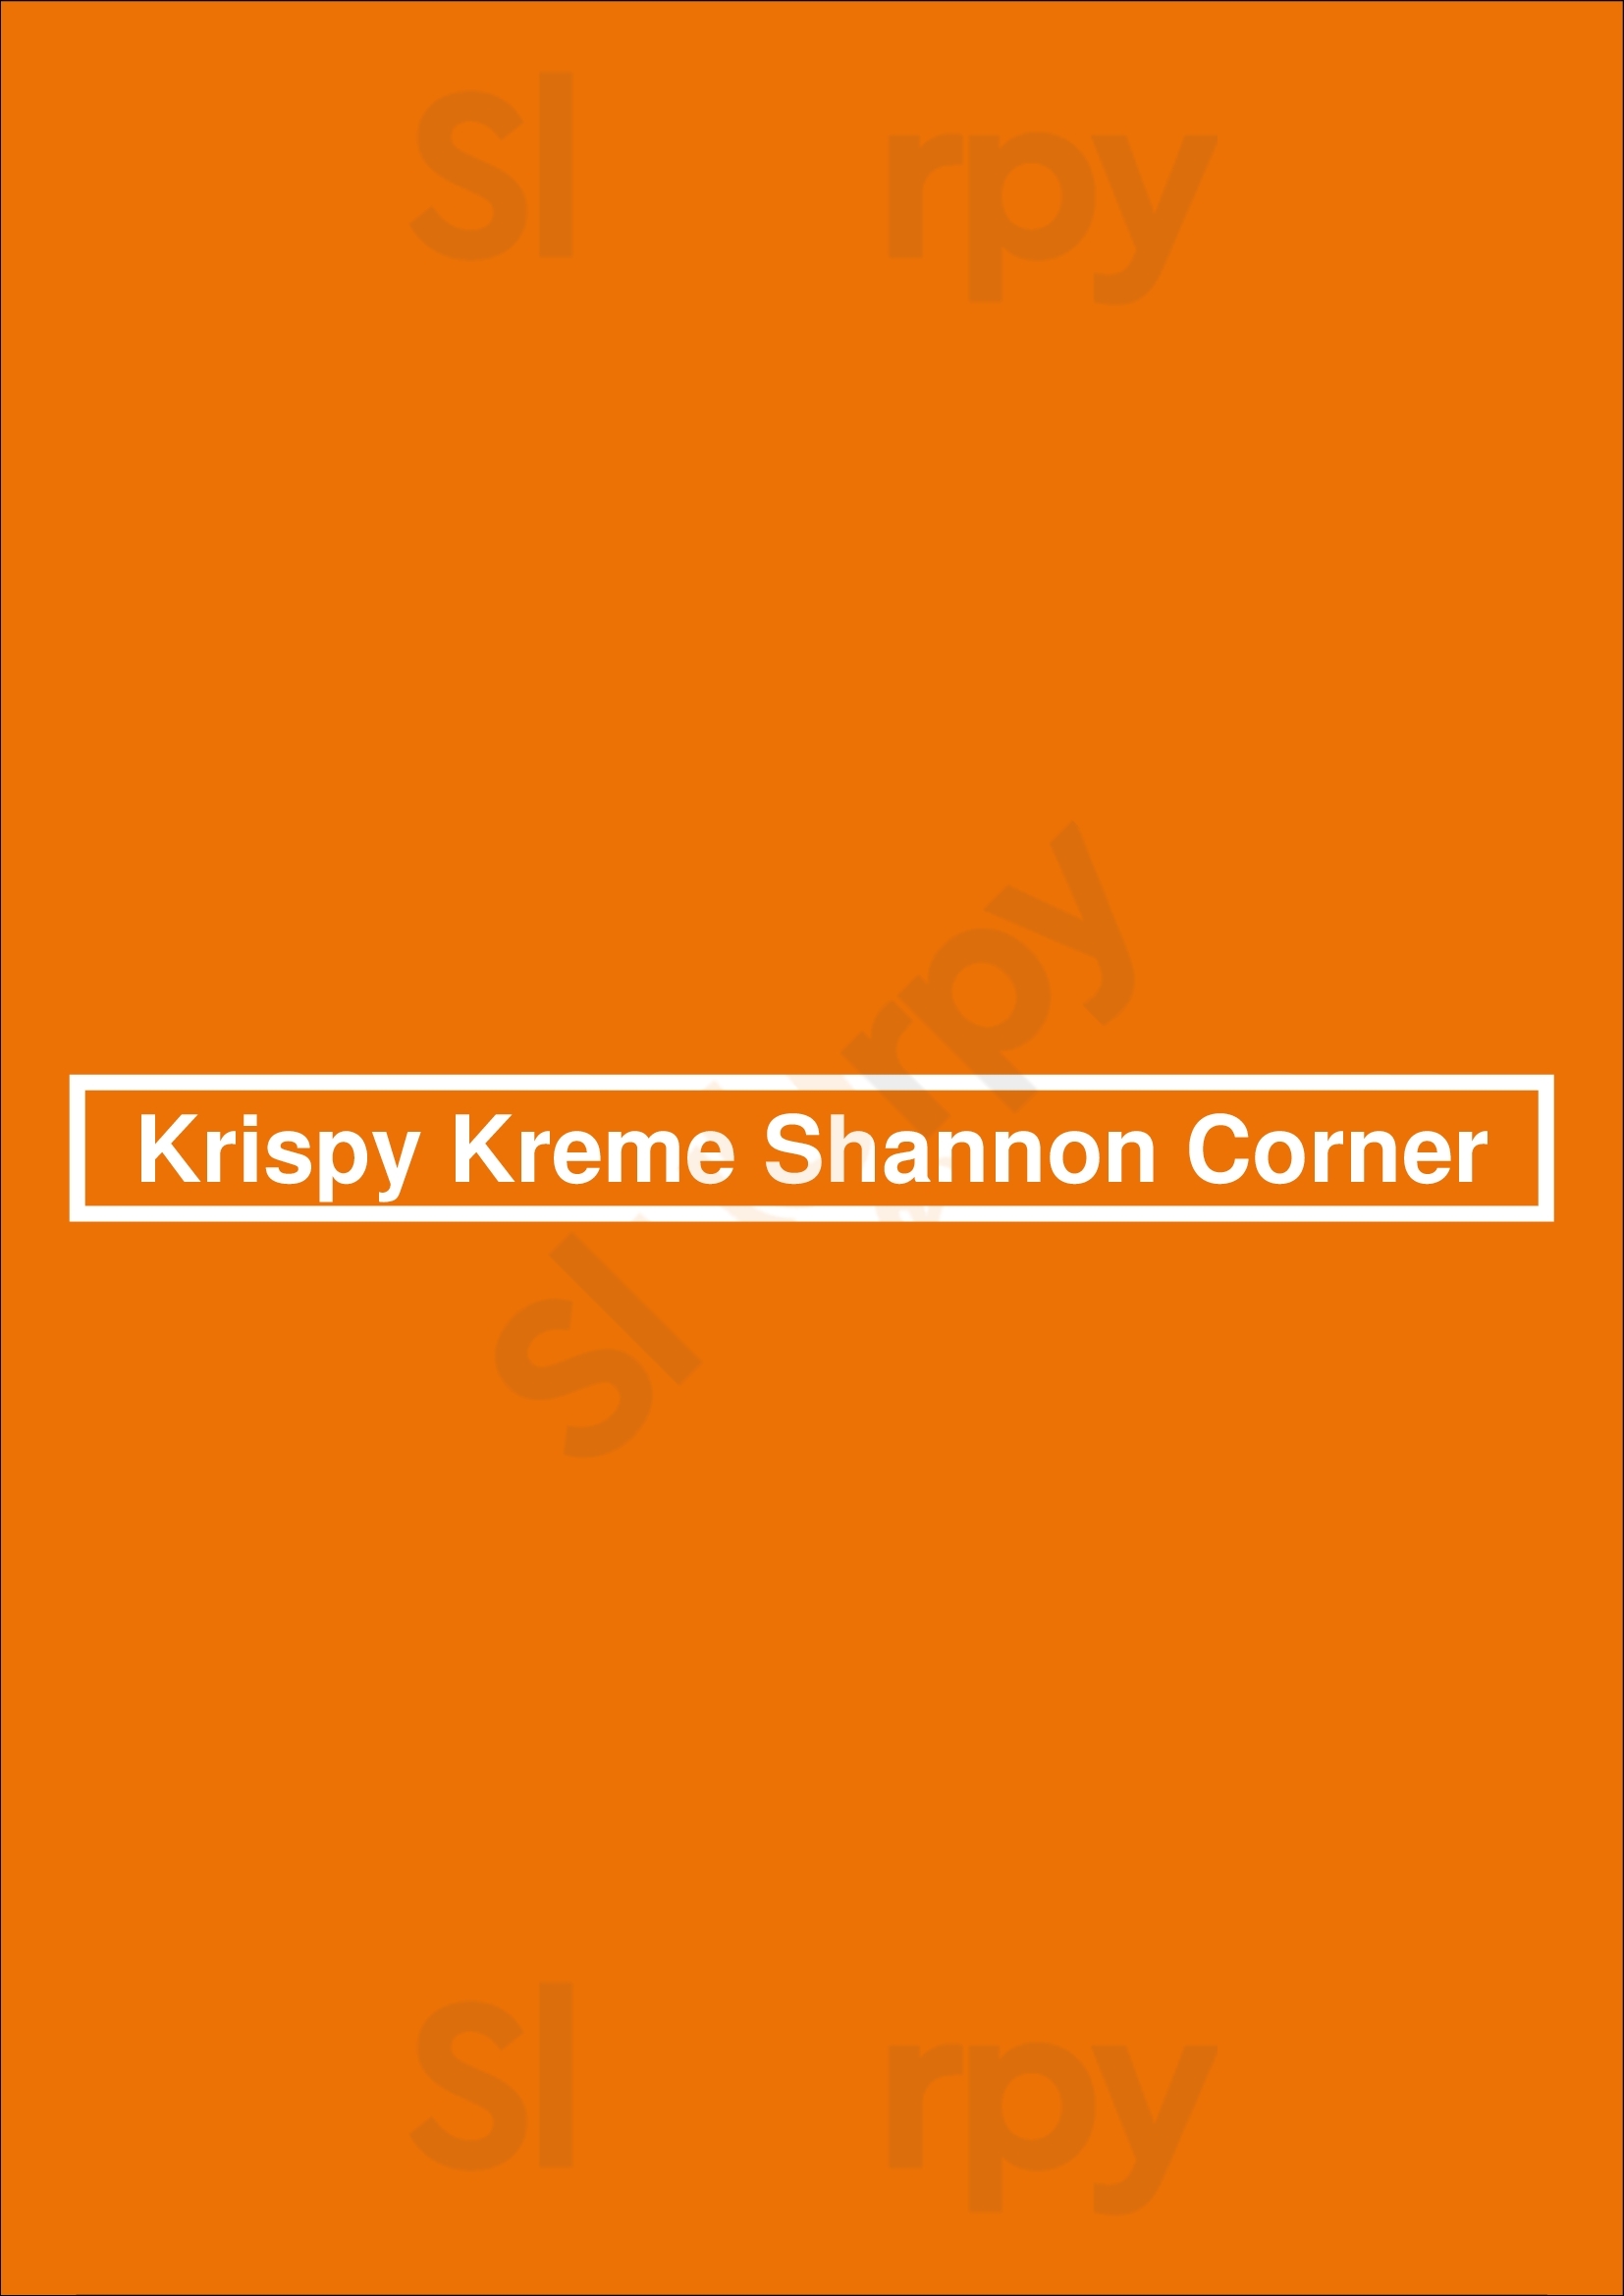 Krispy Kreme Shannon Corner London Menu - 1